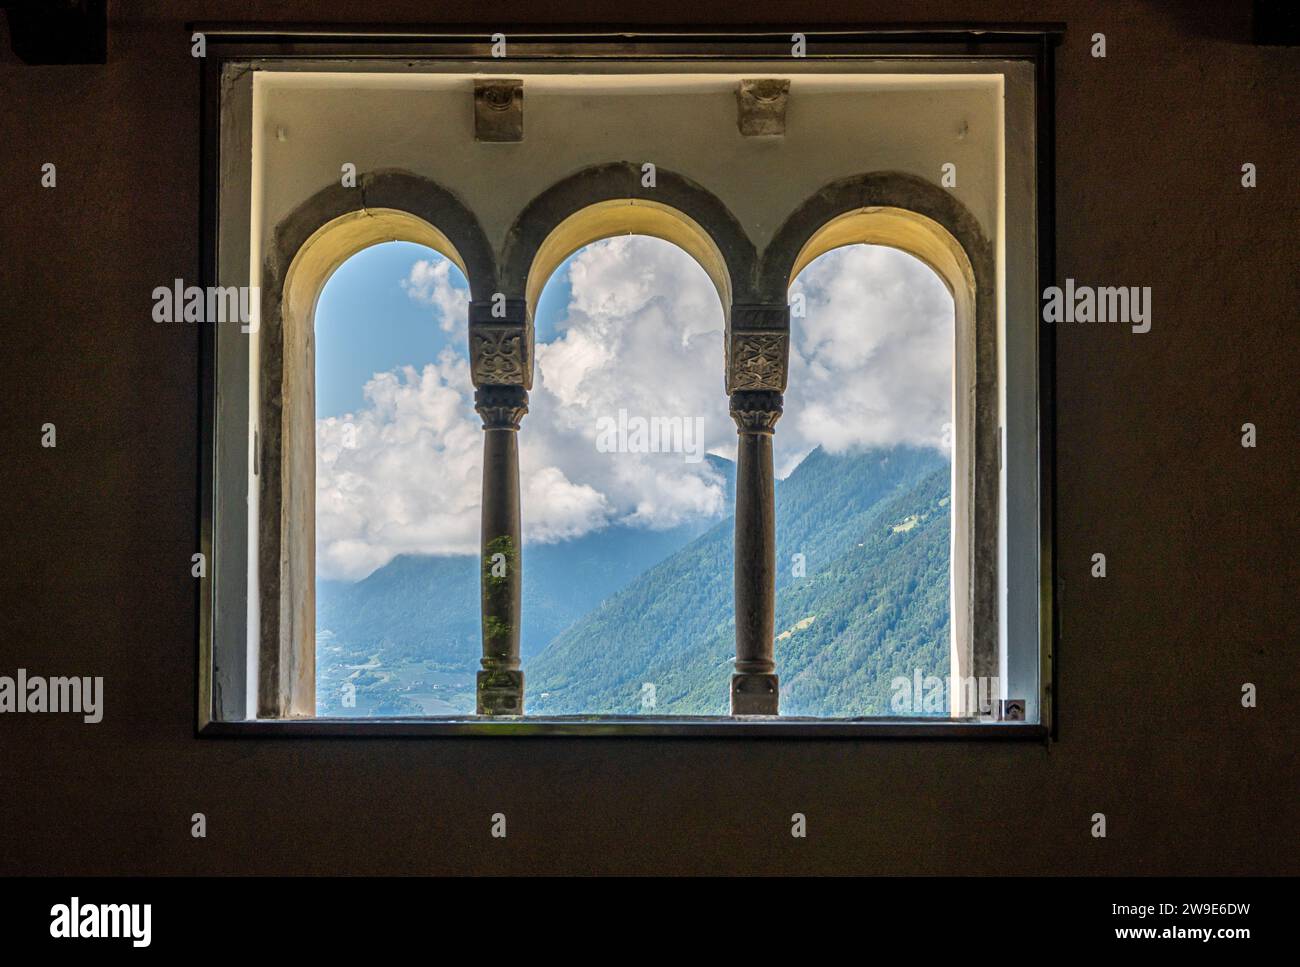 Tripla lancetta del Castello Tirolo in alto Adige vicino a Merano, provincia di Bolzano, Trentino alto Adige, italia - immagine in bianco e nero Foto Stock